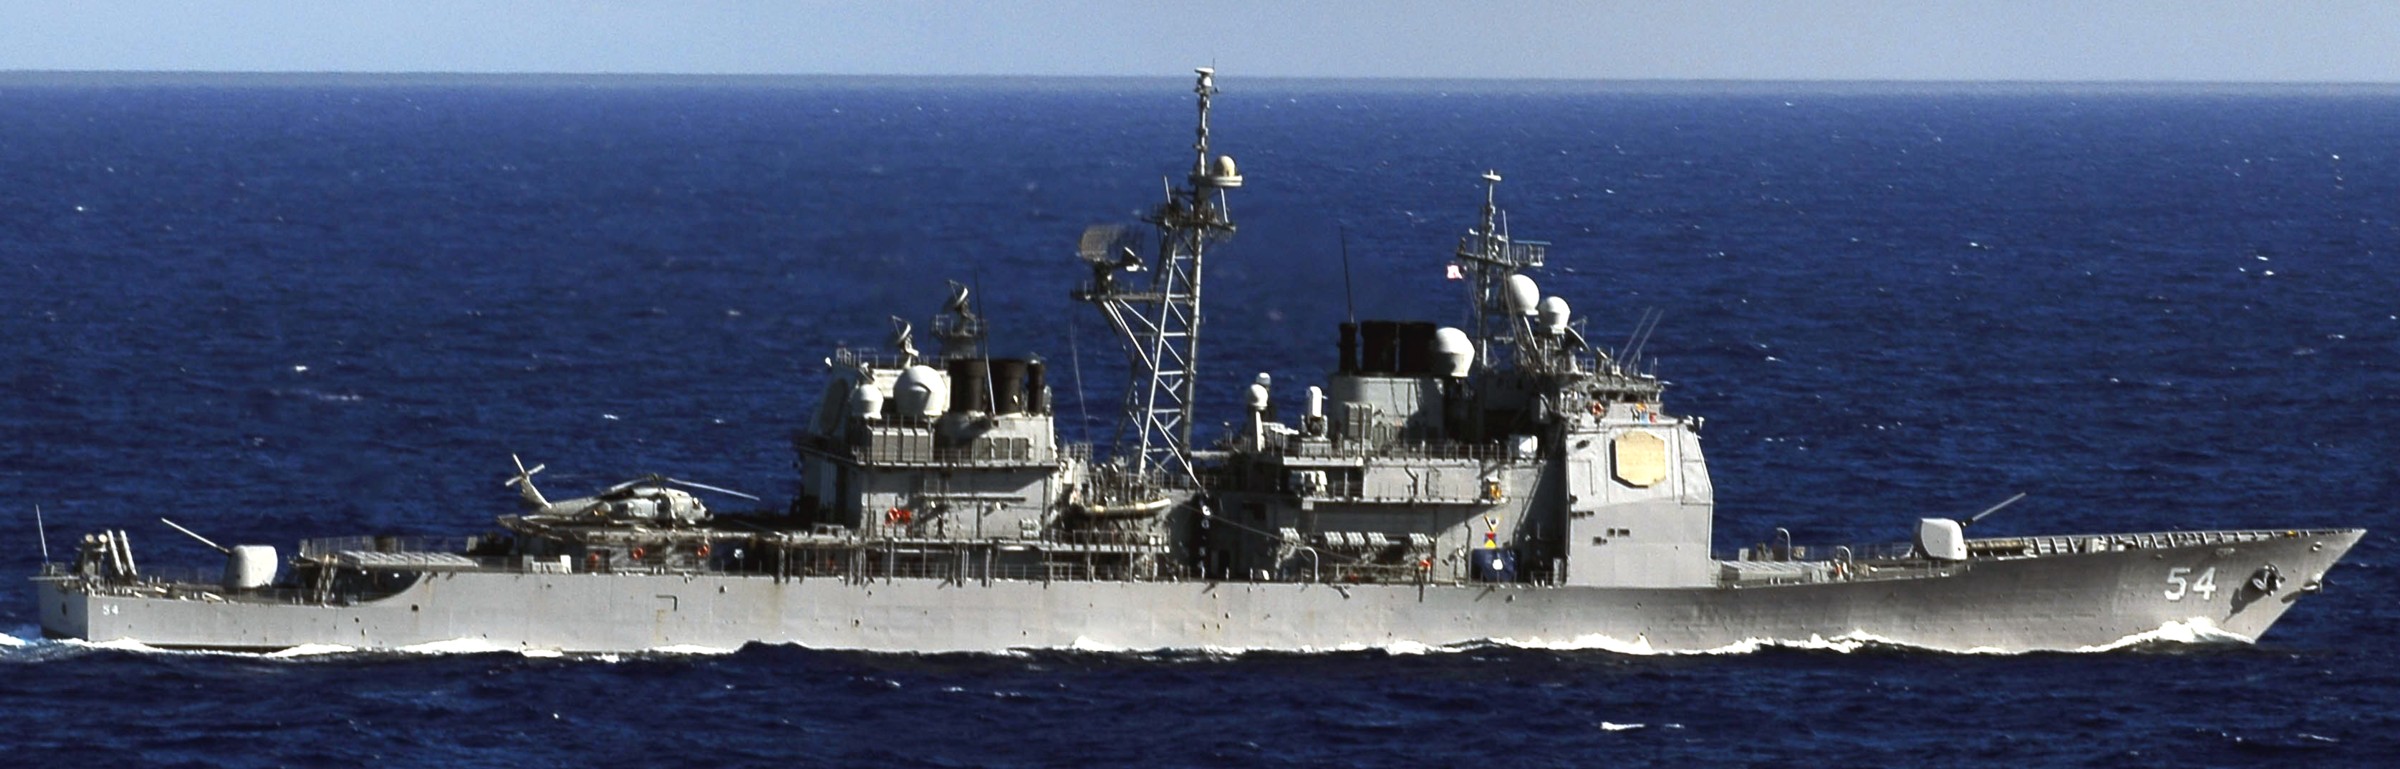 cg-54 uss antietam ticonderoga class guided missile cruiser aegis us navy pacific ocean 29